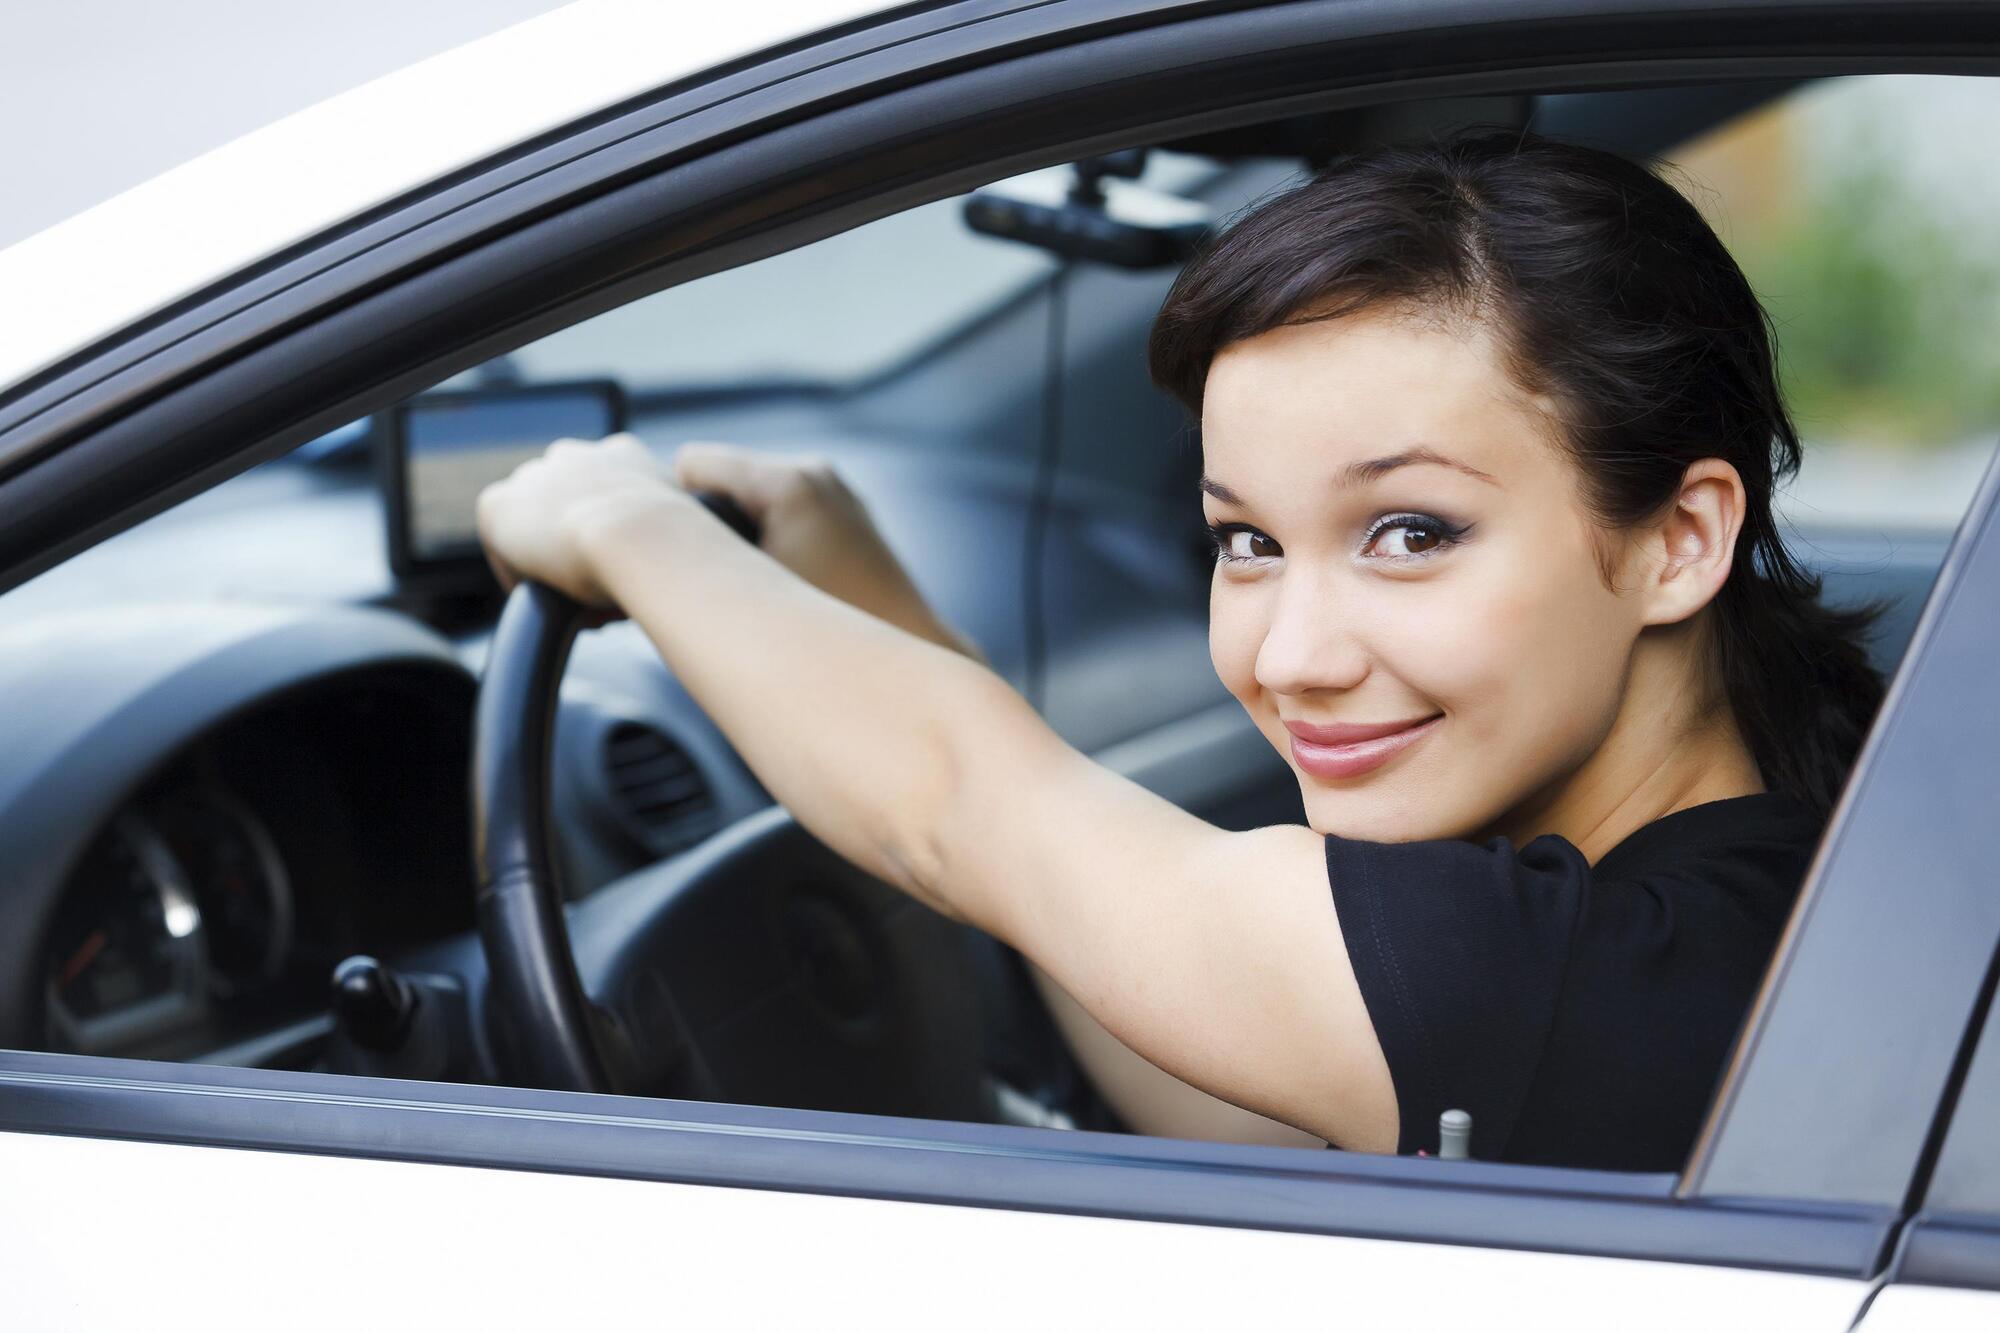 Le donne al volante commettono meno infrazioni